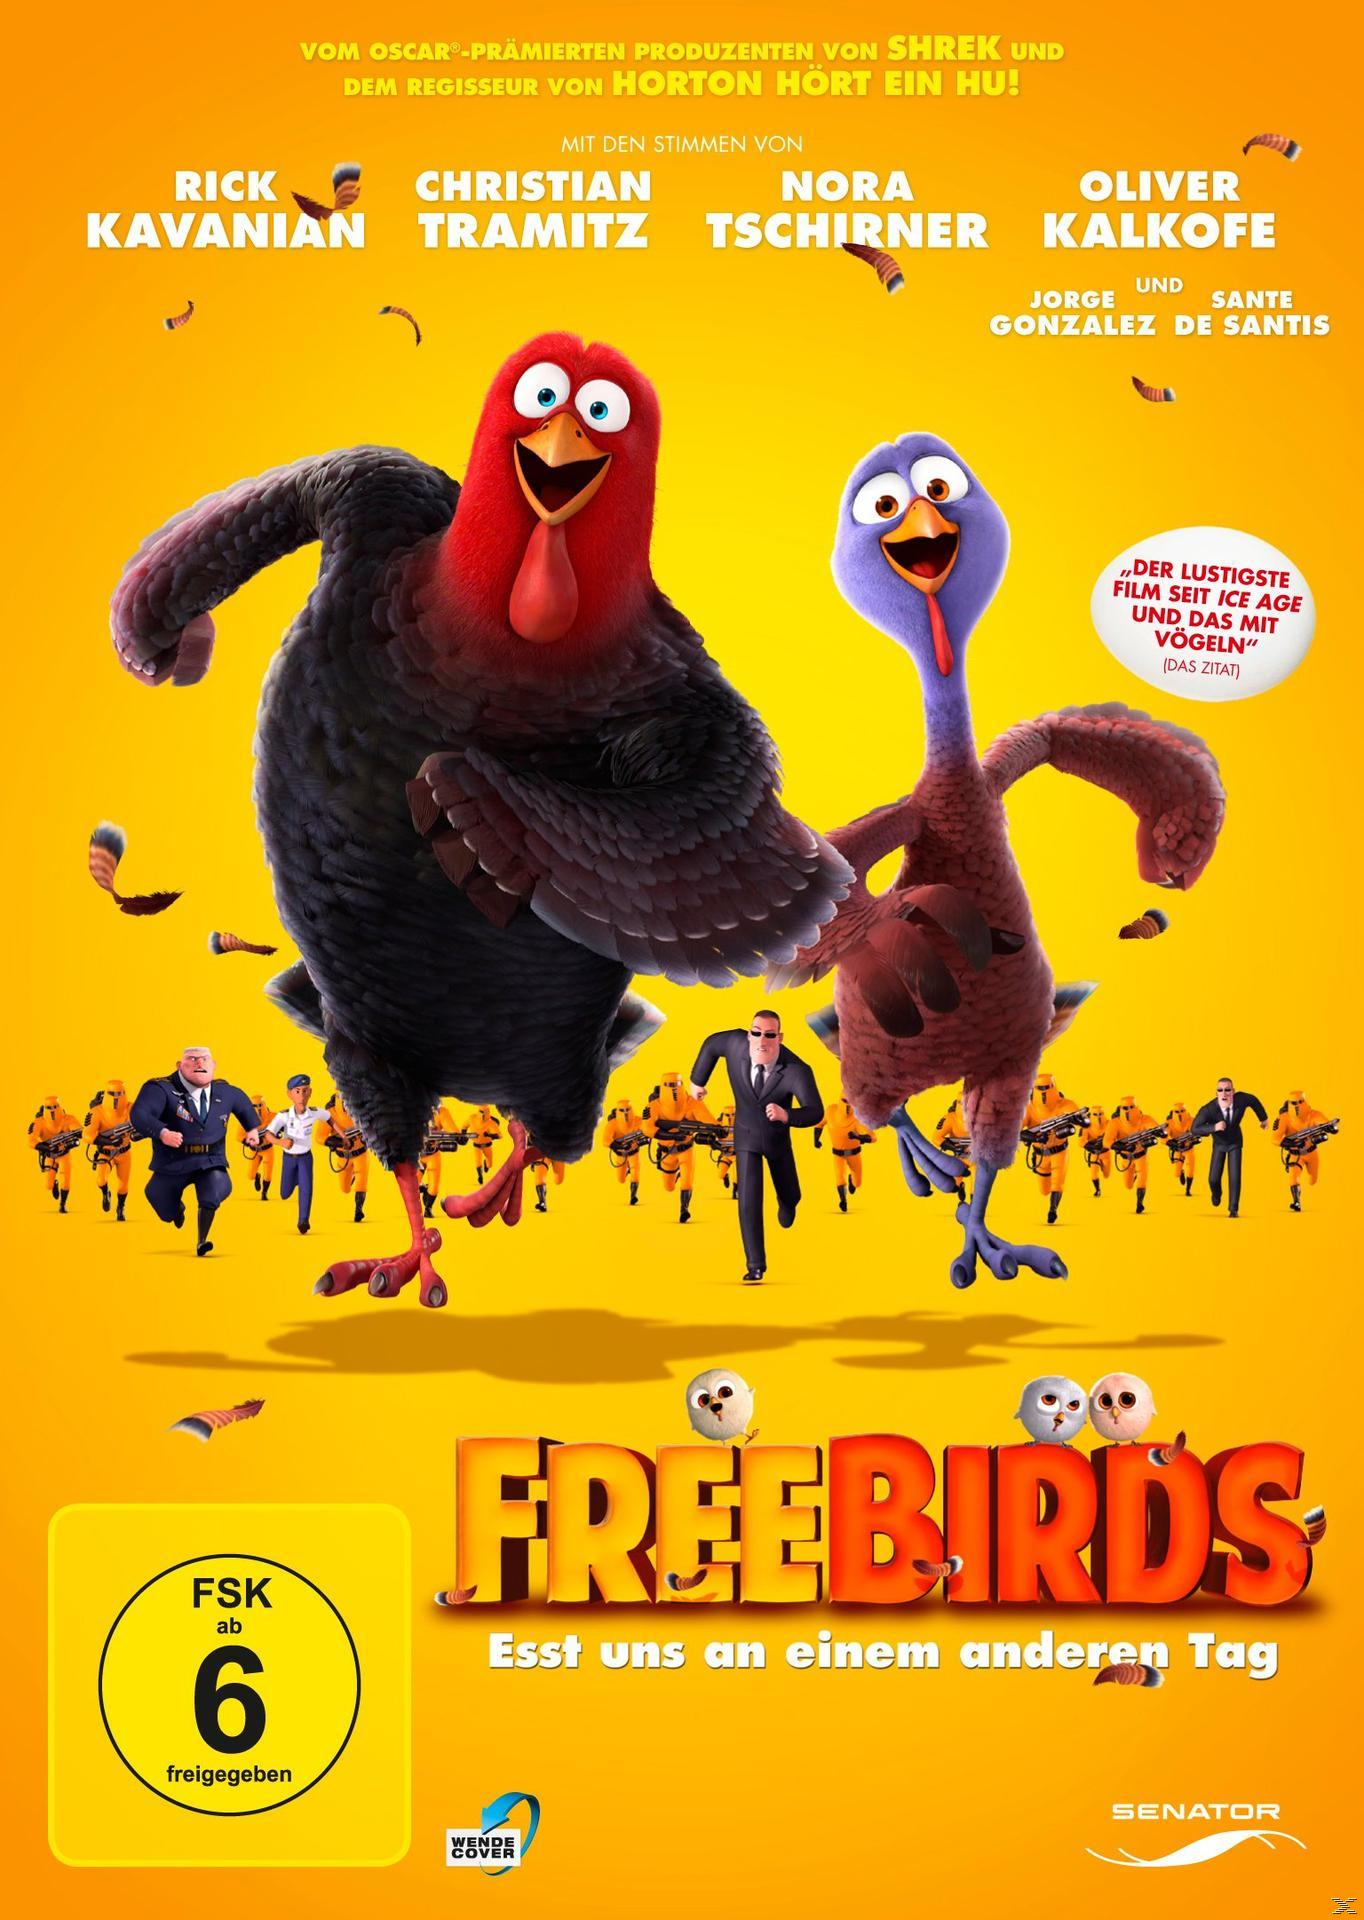 Tag Birds uns - DVD anderen Esst an Free einem